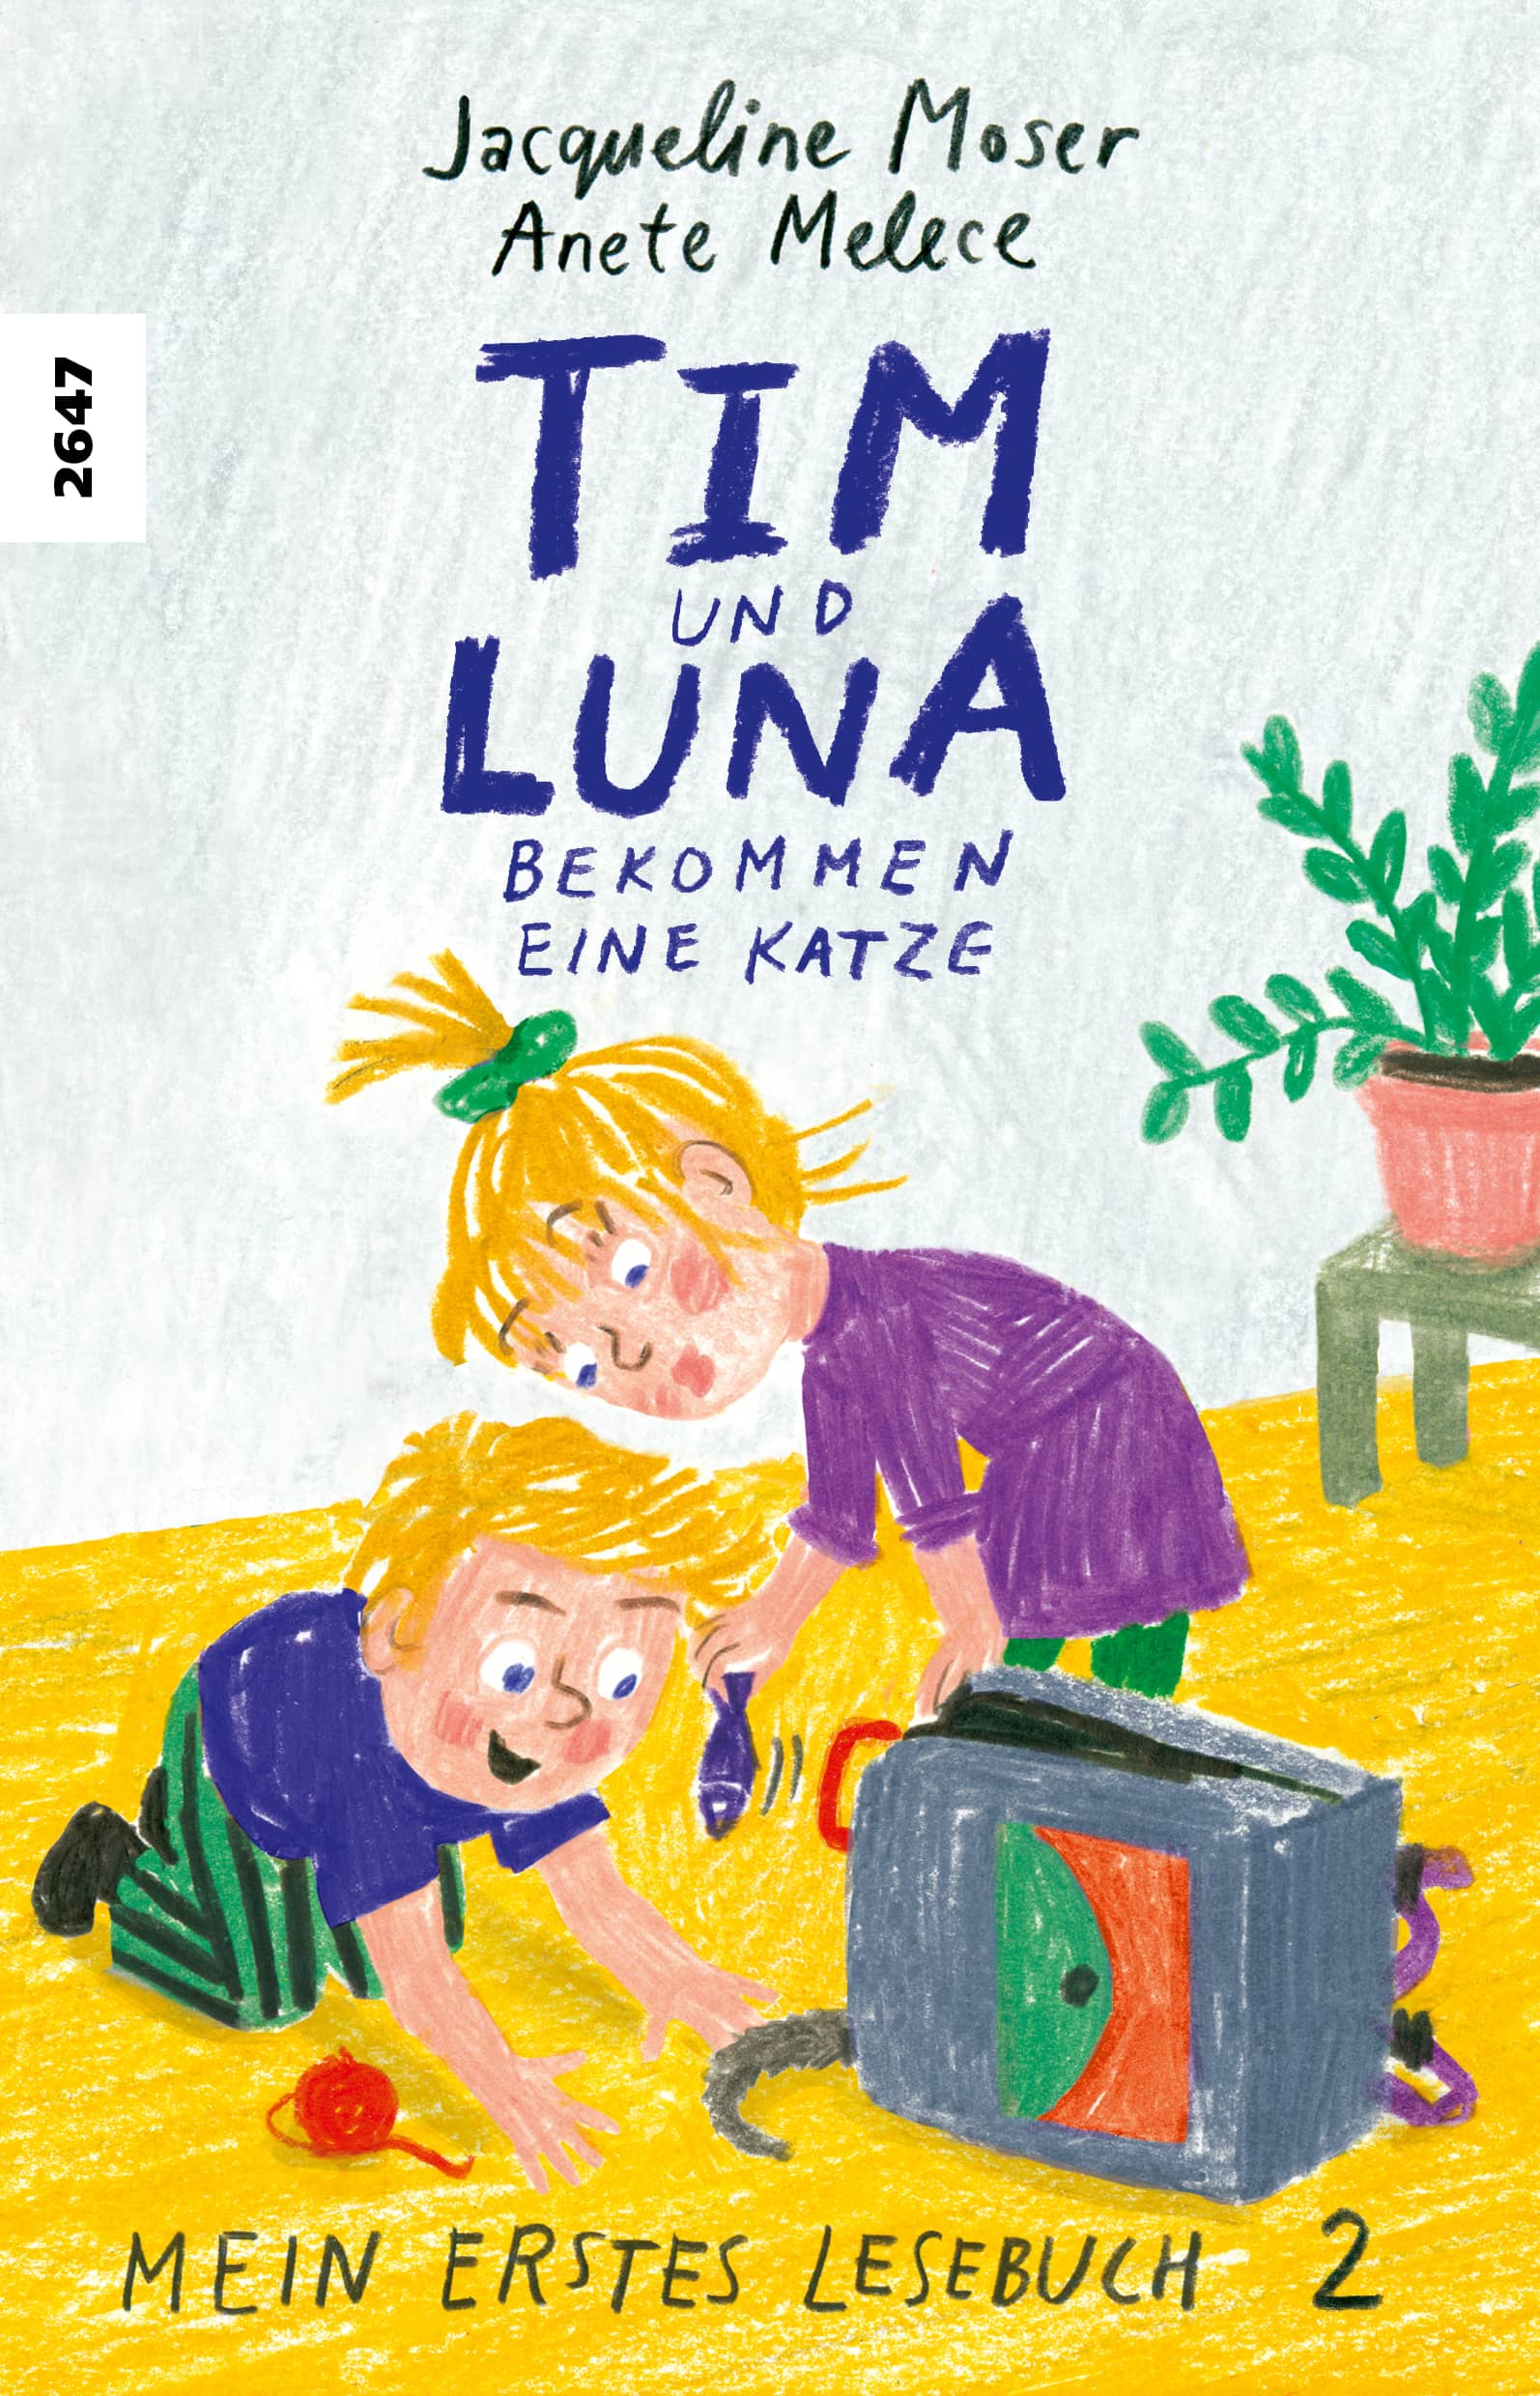 Tim und Luna bekommen eine Katze, ein Erstlesebuch von Jacqueline Moser, Illustration von Anete Melece, SJW Verlag, Lesebuch